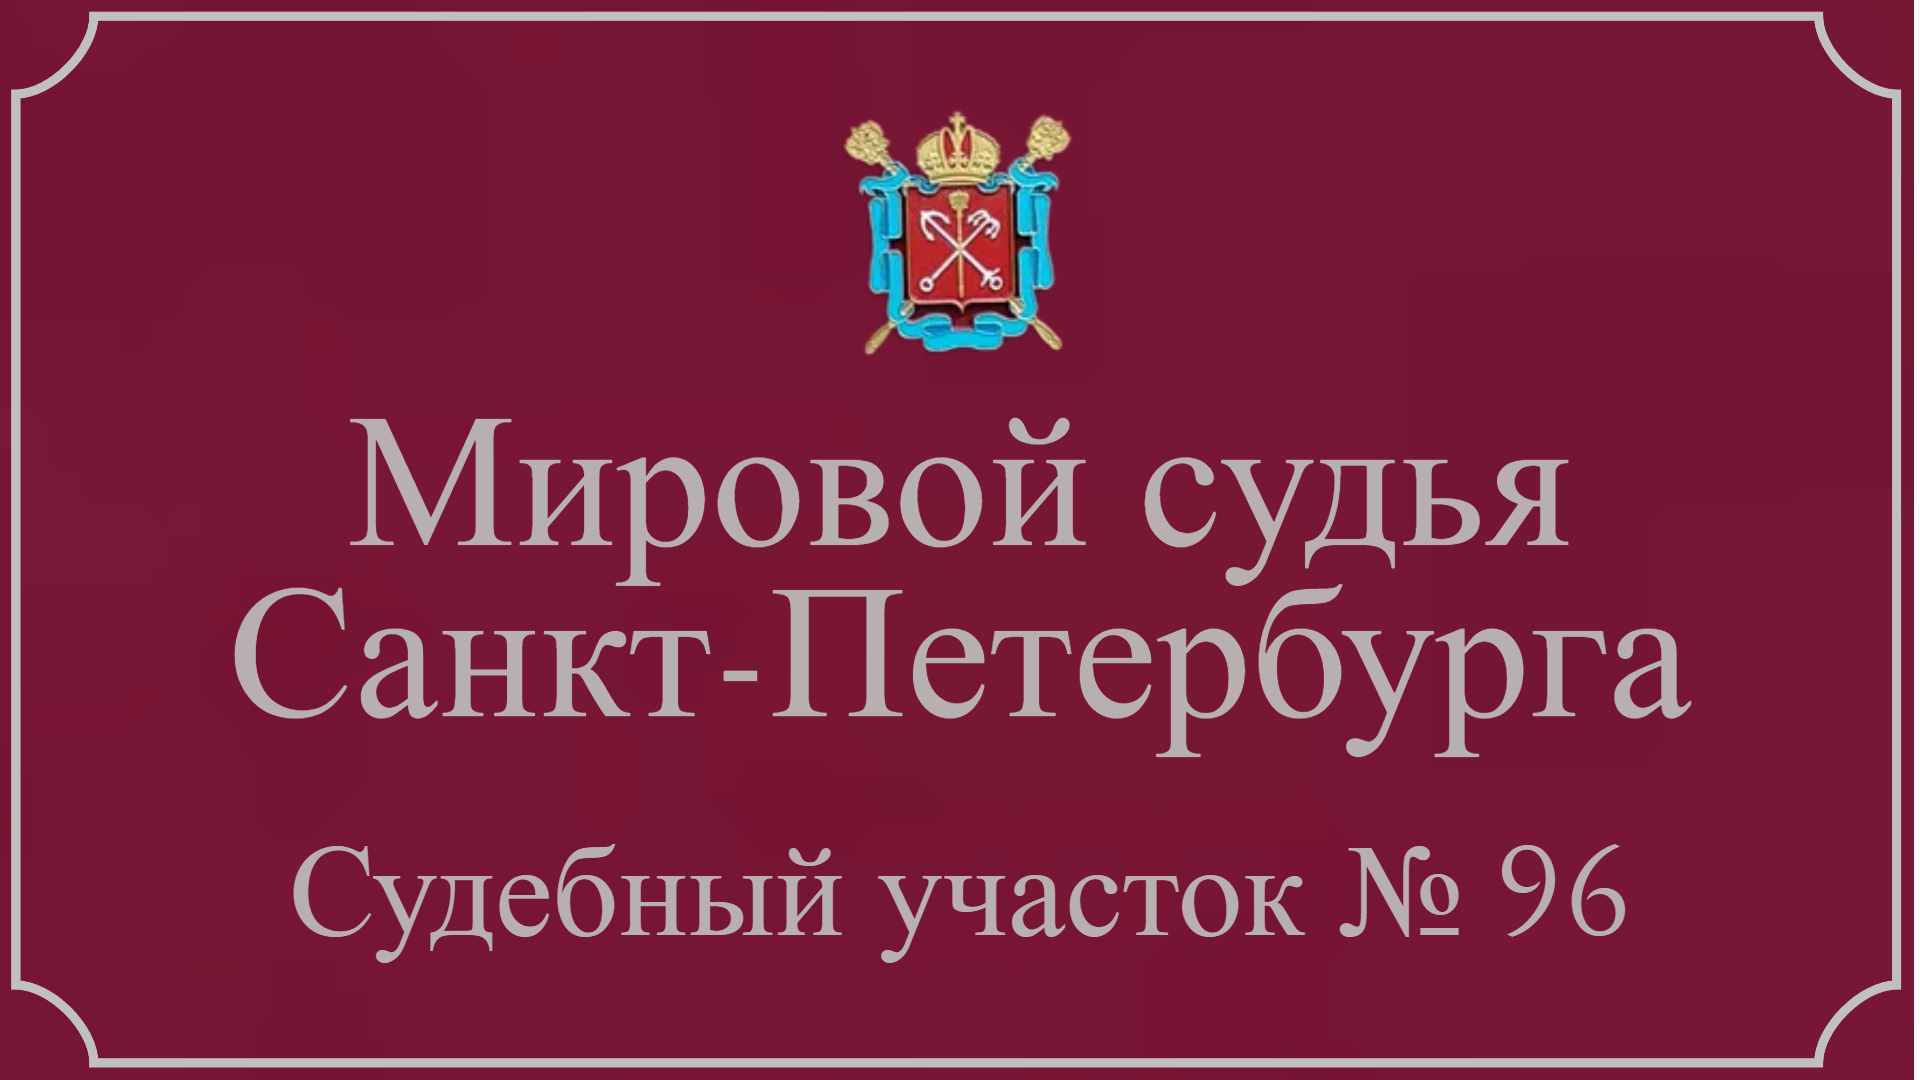 Информация по 96 судебному участку в Санкт-Петербурге.